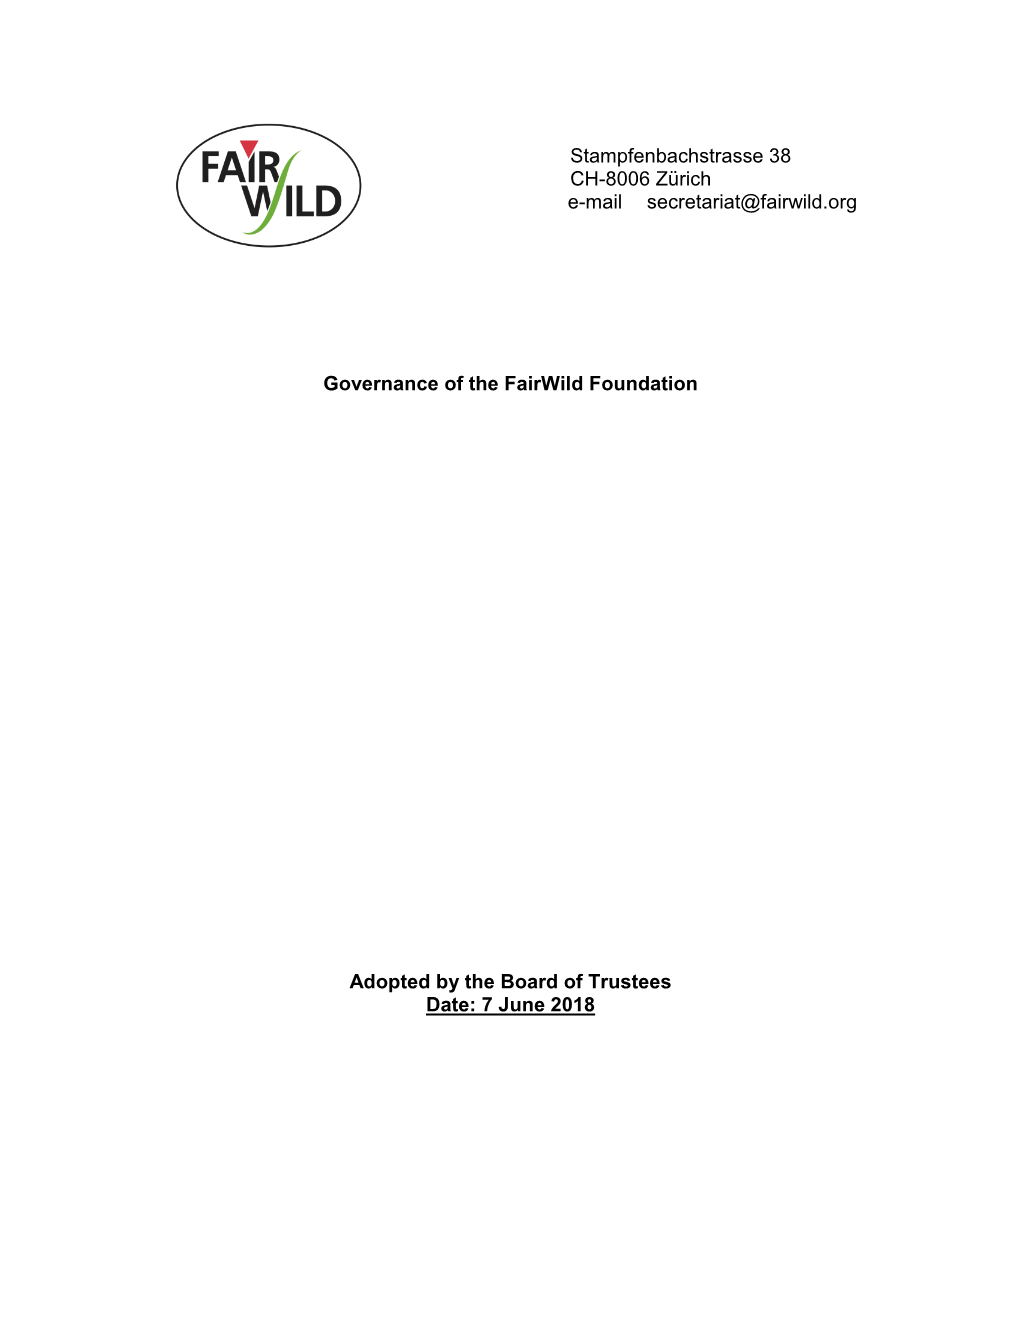 Governance of the Fairwild Foundation